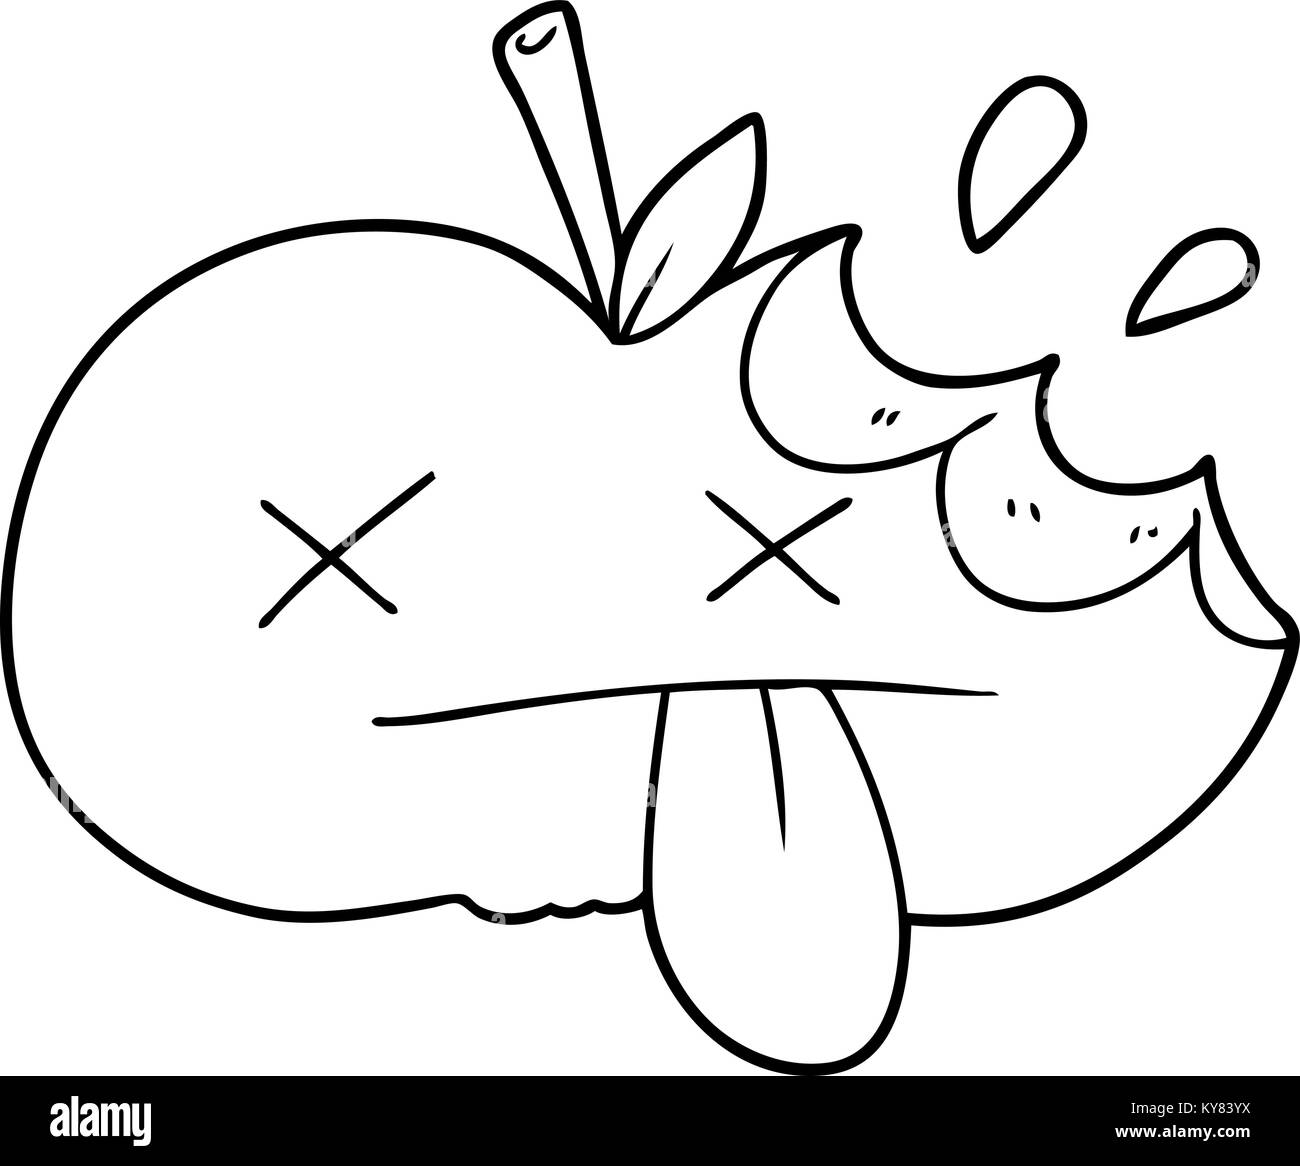 Mano de manzana mordida Imágenes vectoriales de stock Alamy